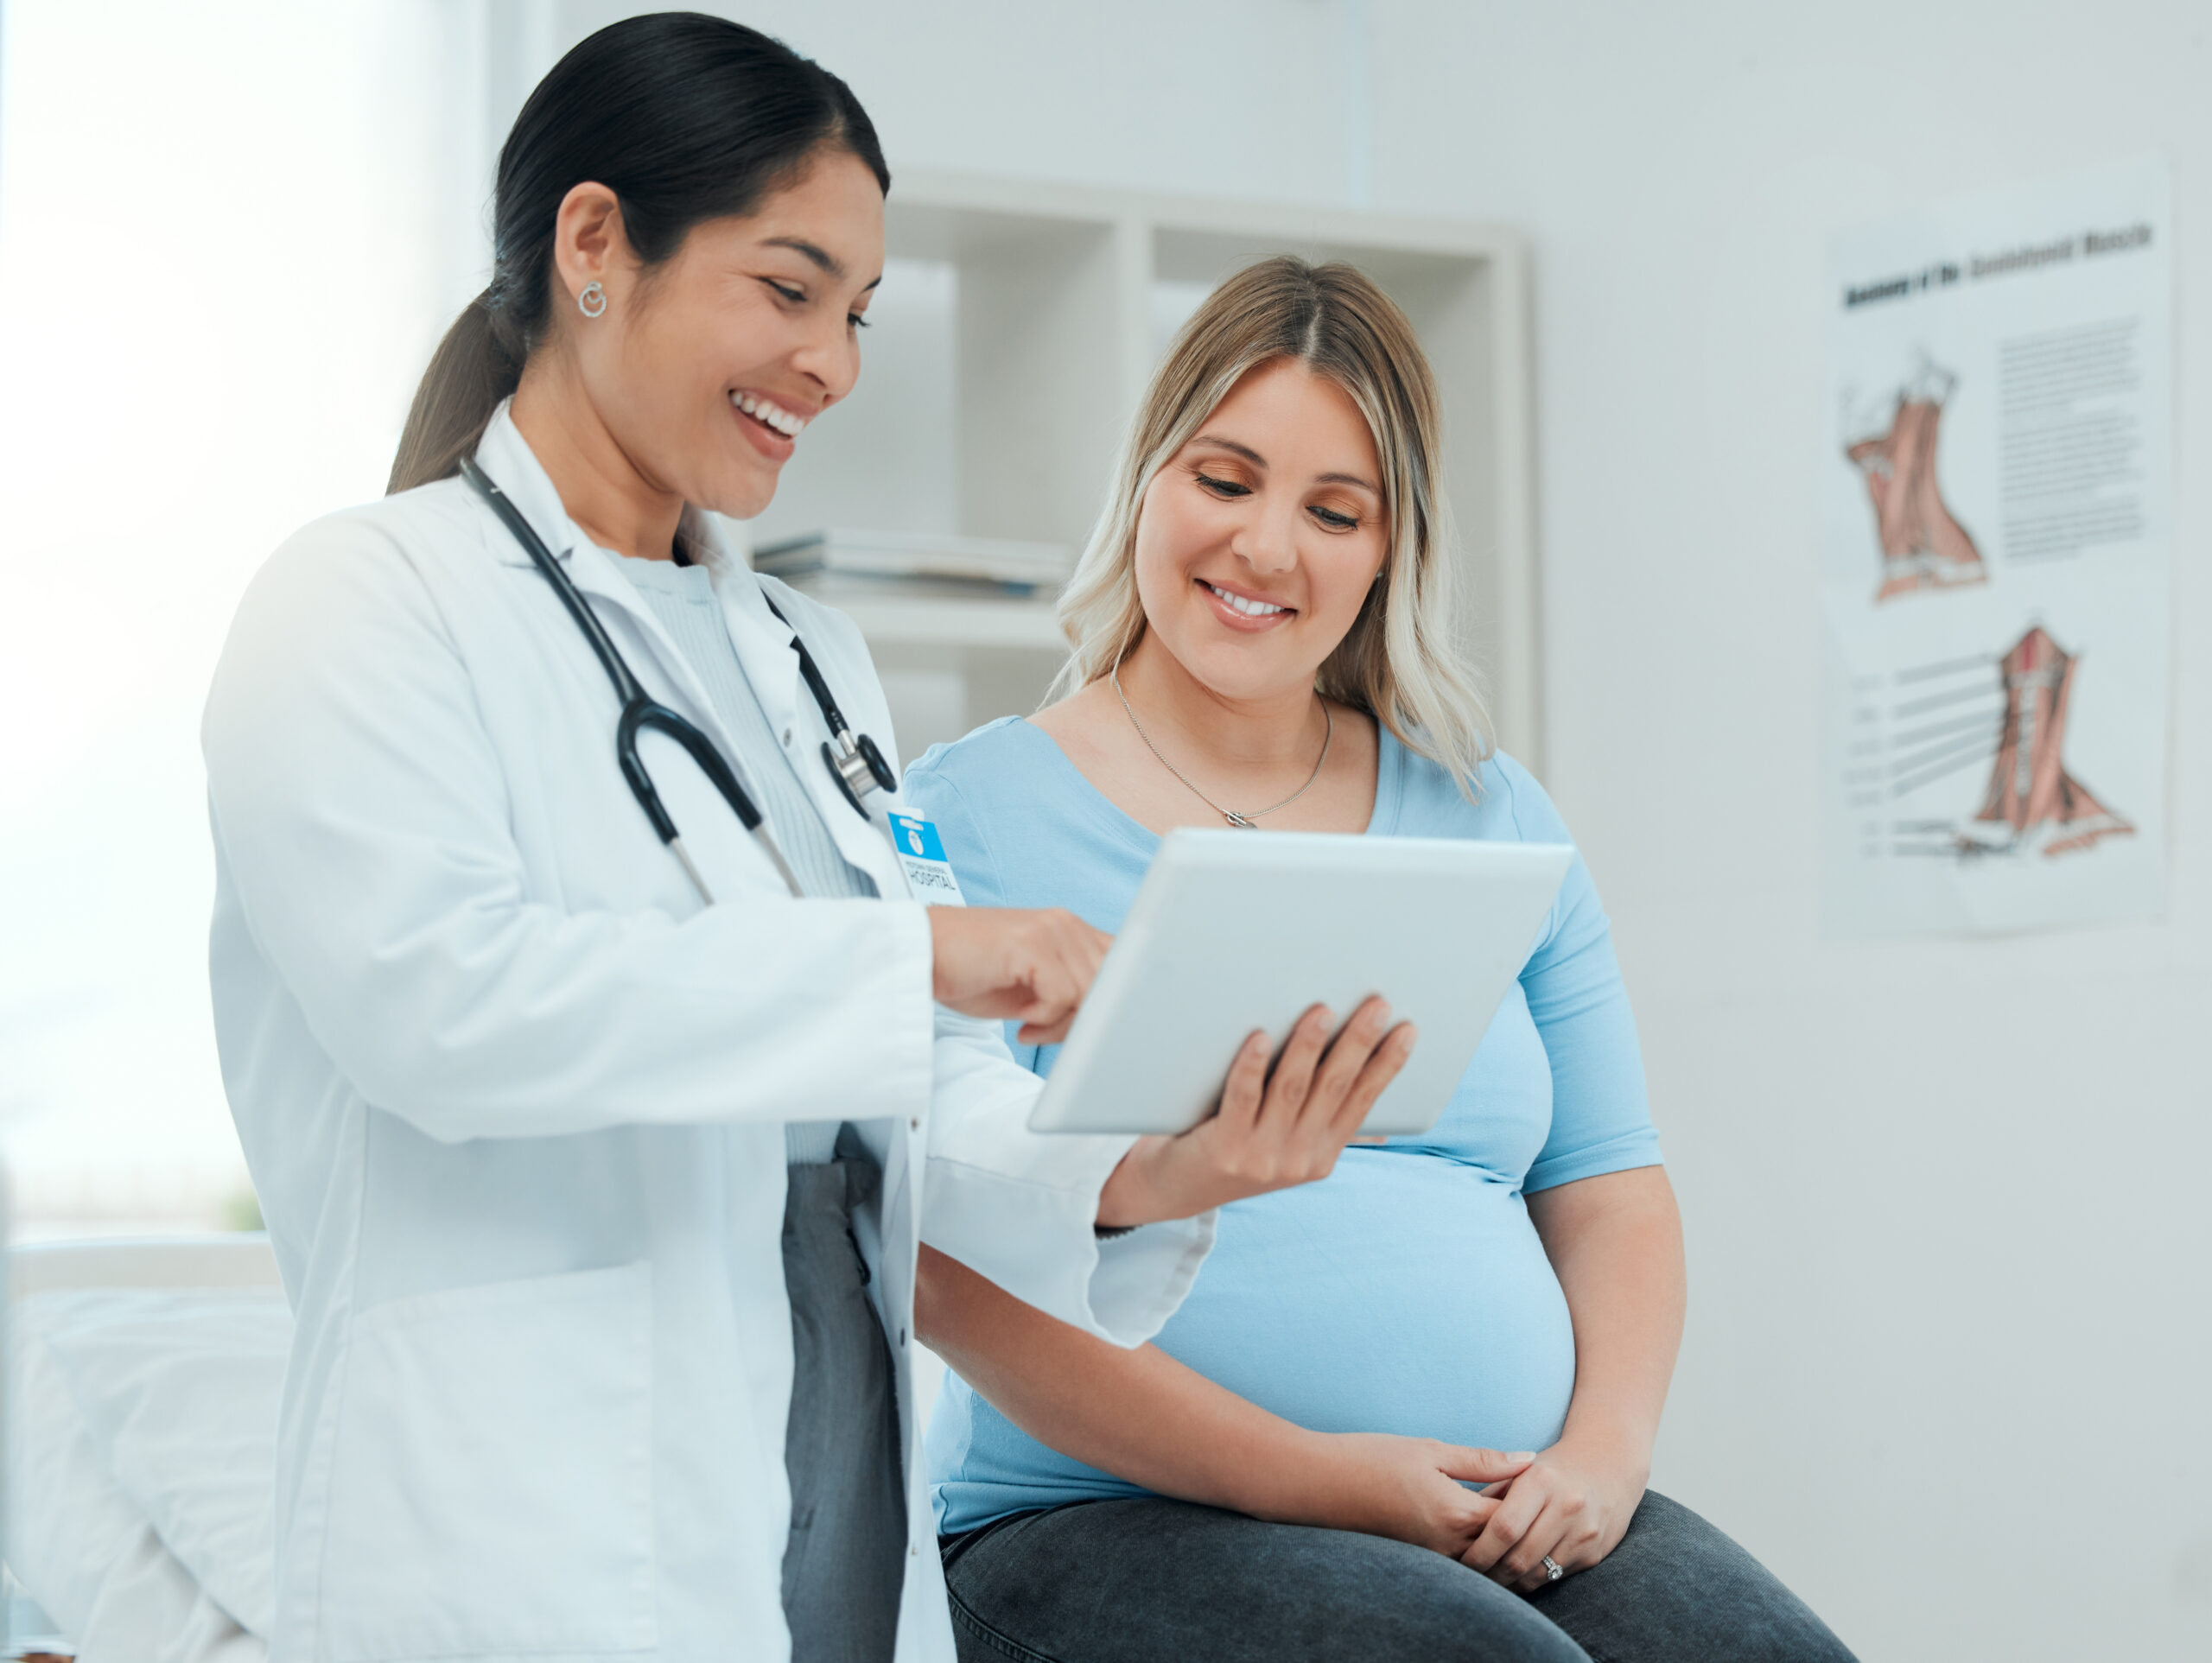 医生向怀孕患者展示触摸板。